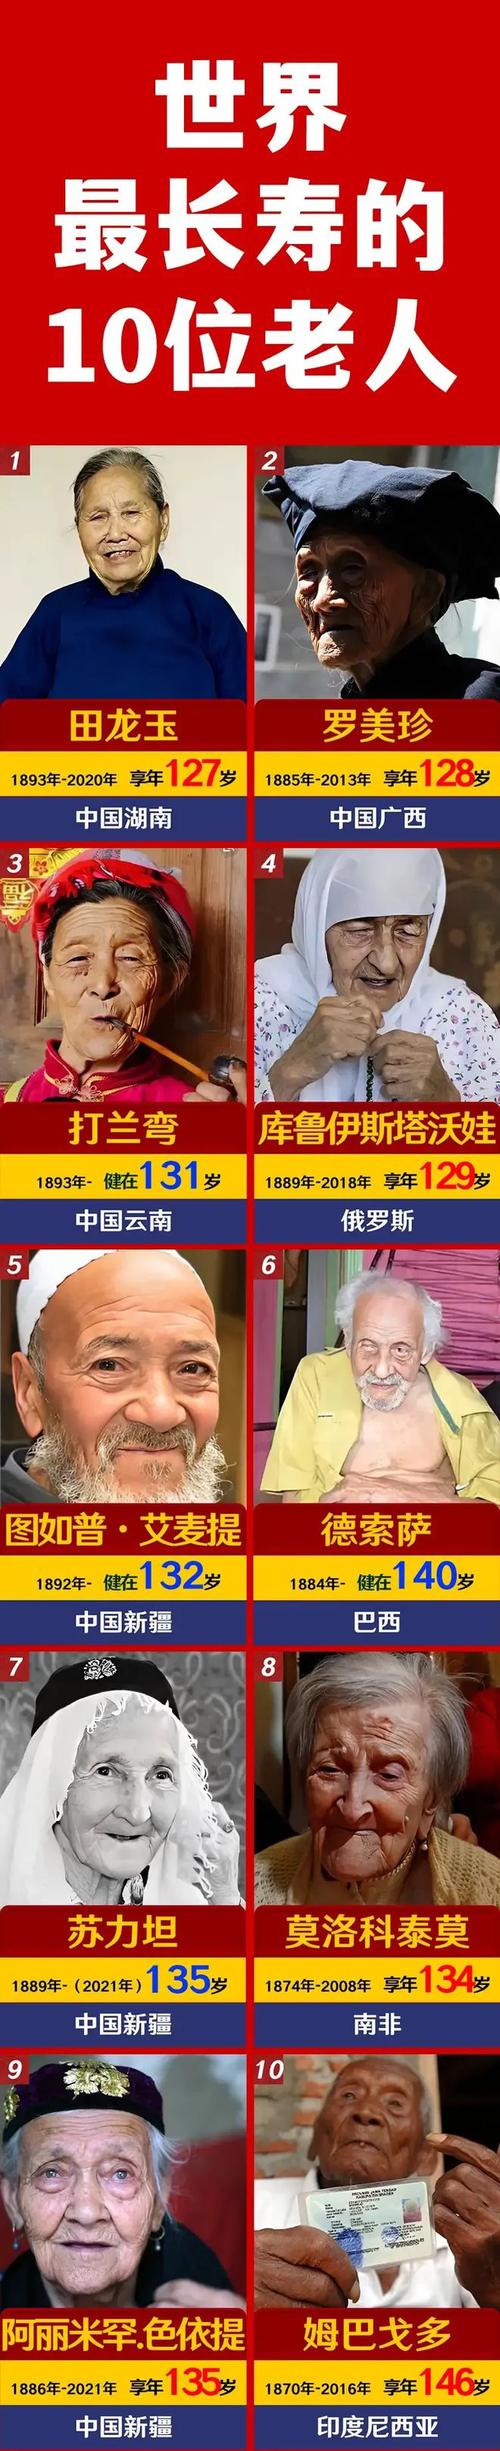 世界上最长寿的10位老人!|清朝|民国|新中国_网易订阅